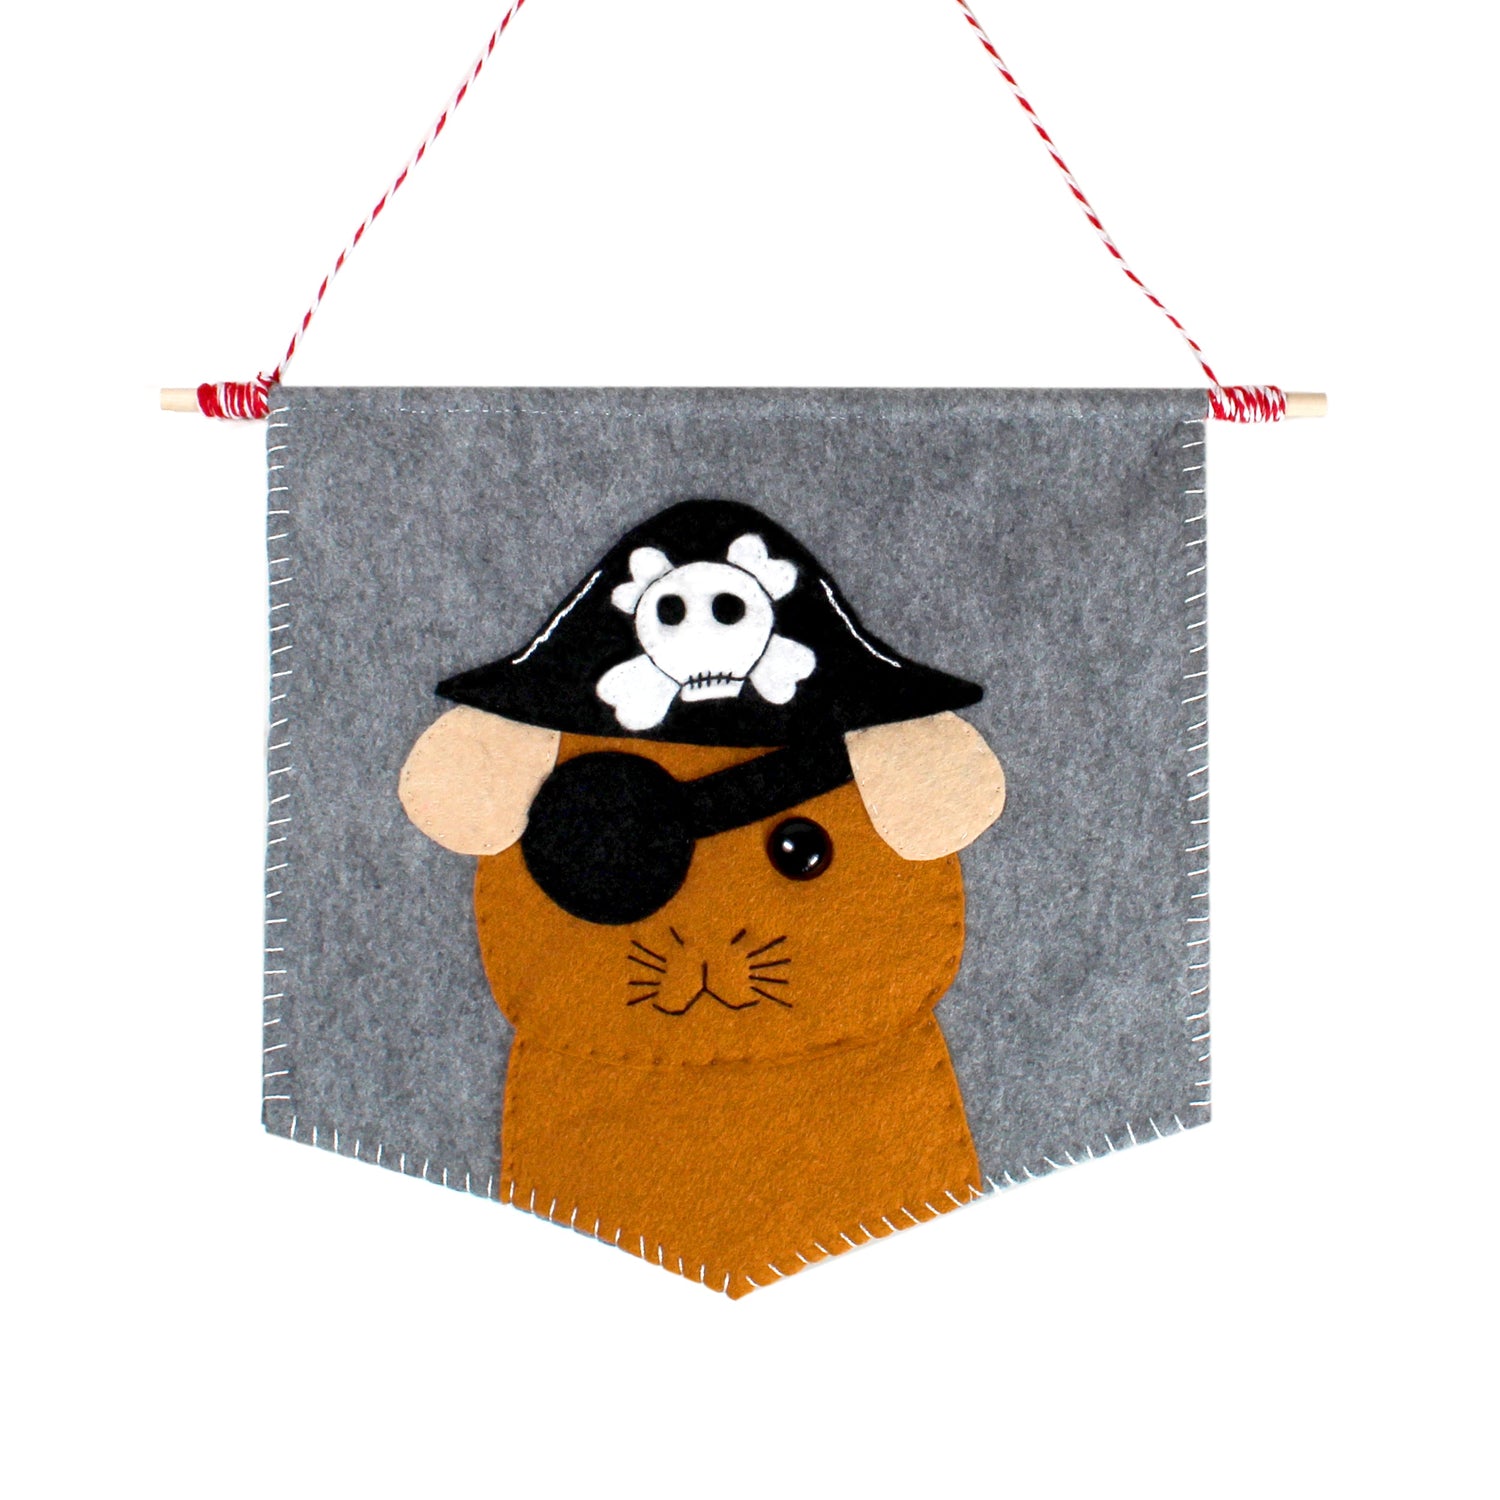 Medium sized felt ginger guinea pig pirate hangable flag in grey